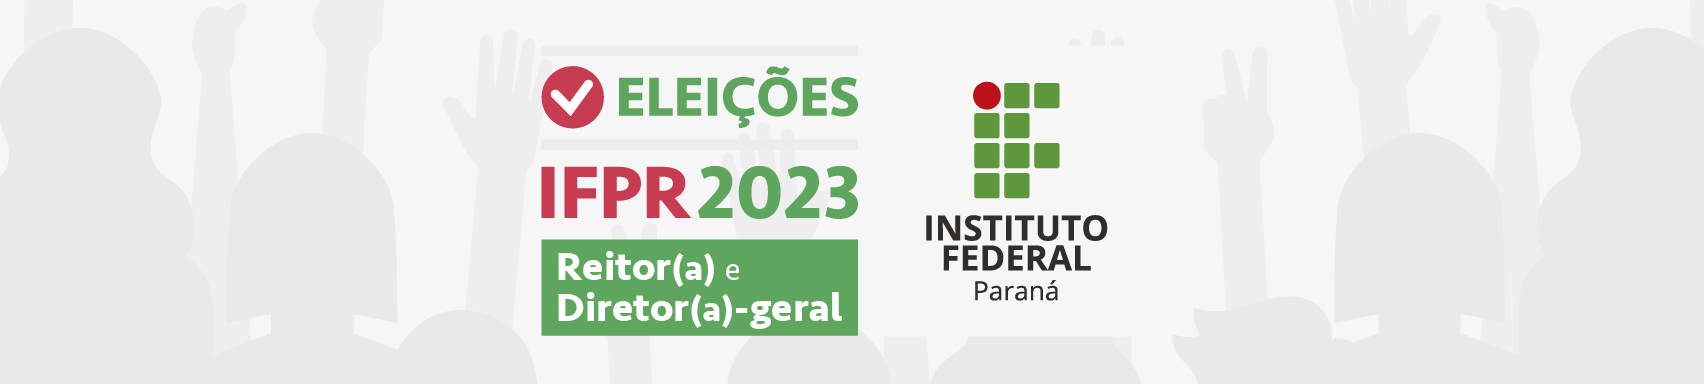 Eleições 2023 do IFPR - Consulta para o cardo de Reitor e Diretor-geral